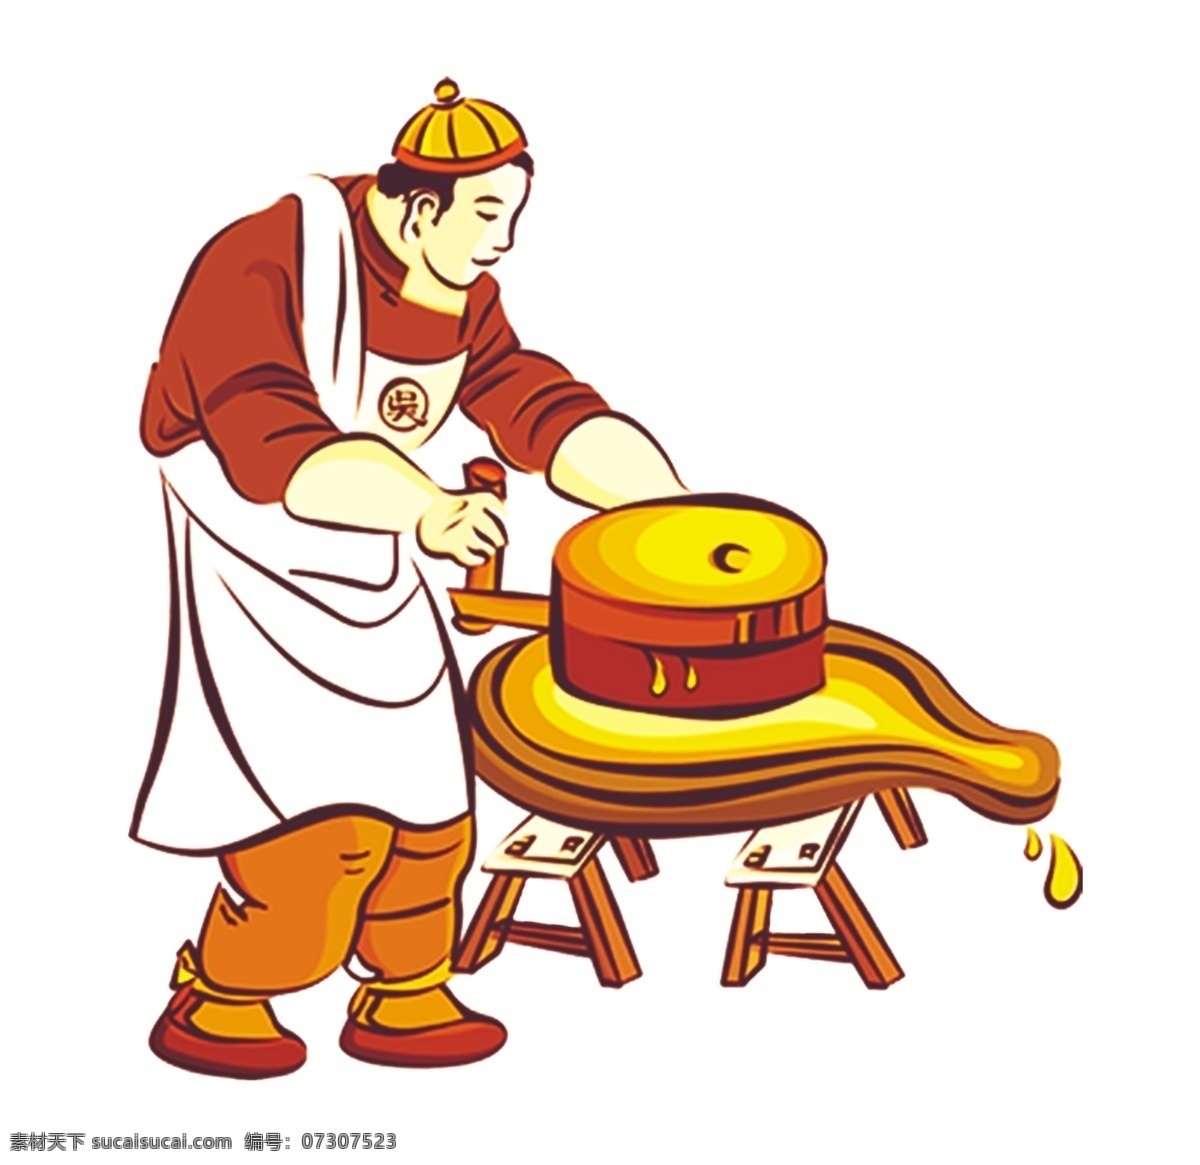 磨坊 石磨坊 古代作坊 水磨坊 水磨 磨豆腐 古代人物 卡通系列 分层